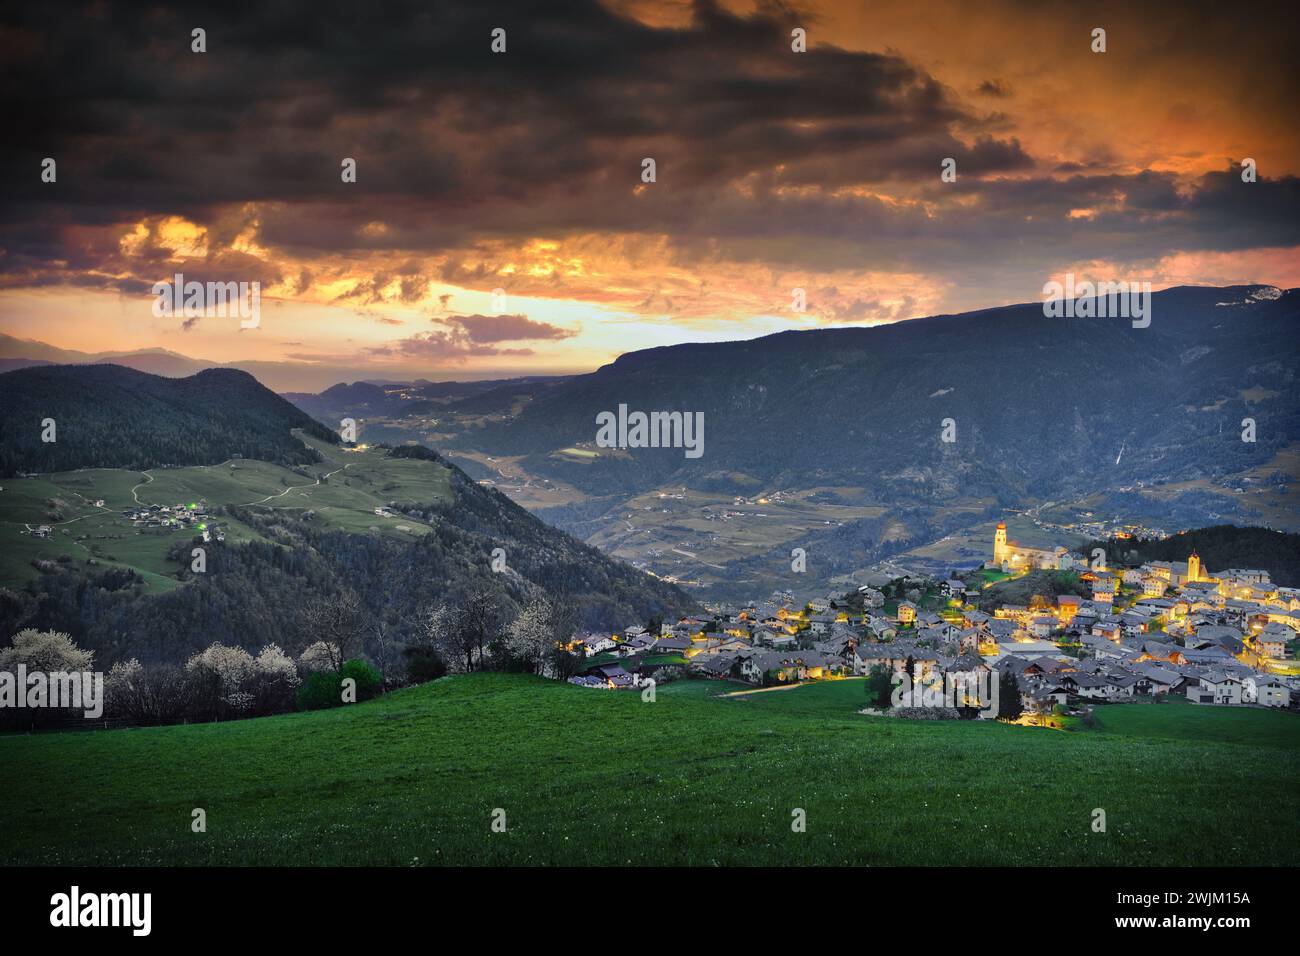 Fotografieren Sie die Landschaft von Laion in Italien bei Sonnenuntergang Stockfoto